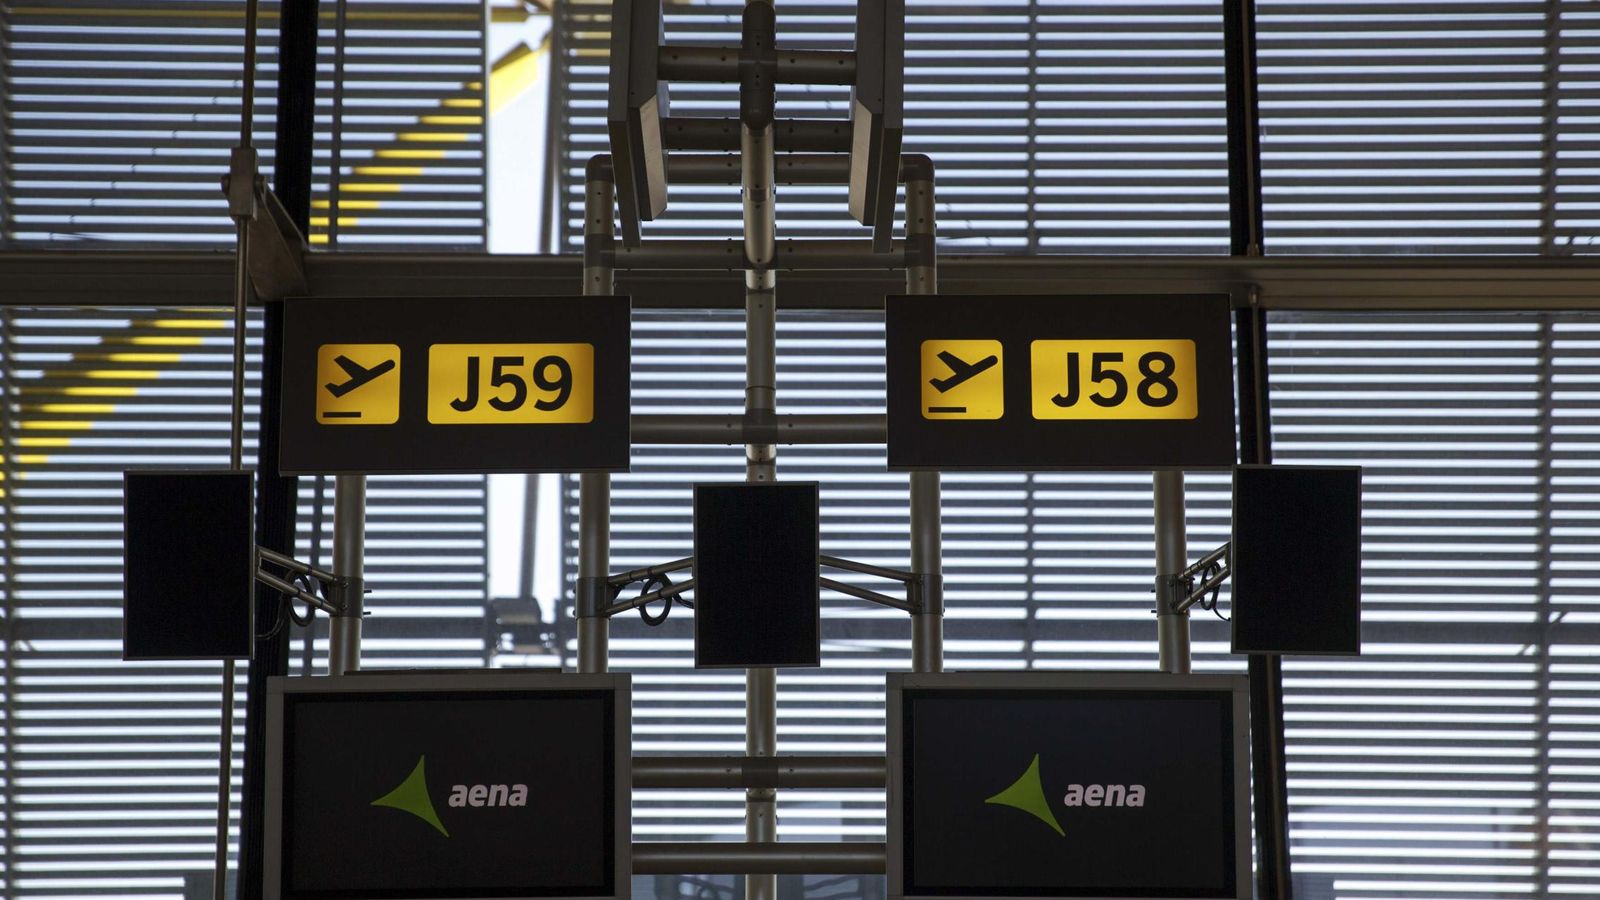 Foto: Logo de Aena en las pantallas de las puertas de embarque de la Terminal 4 del aeropuerto Adolfo Suárez Madrid-Barajas. (Reuters)